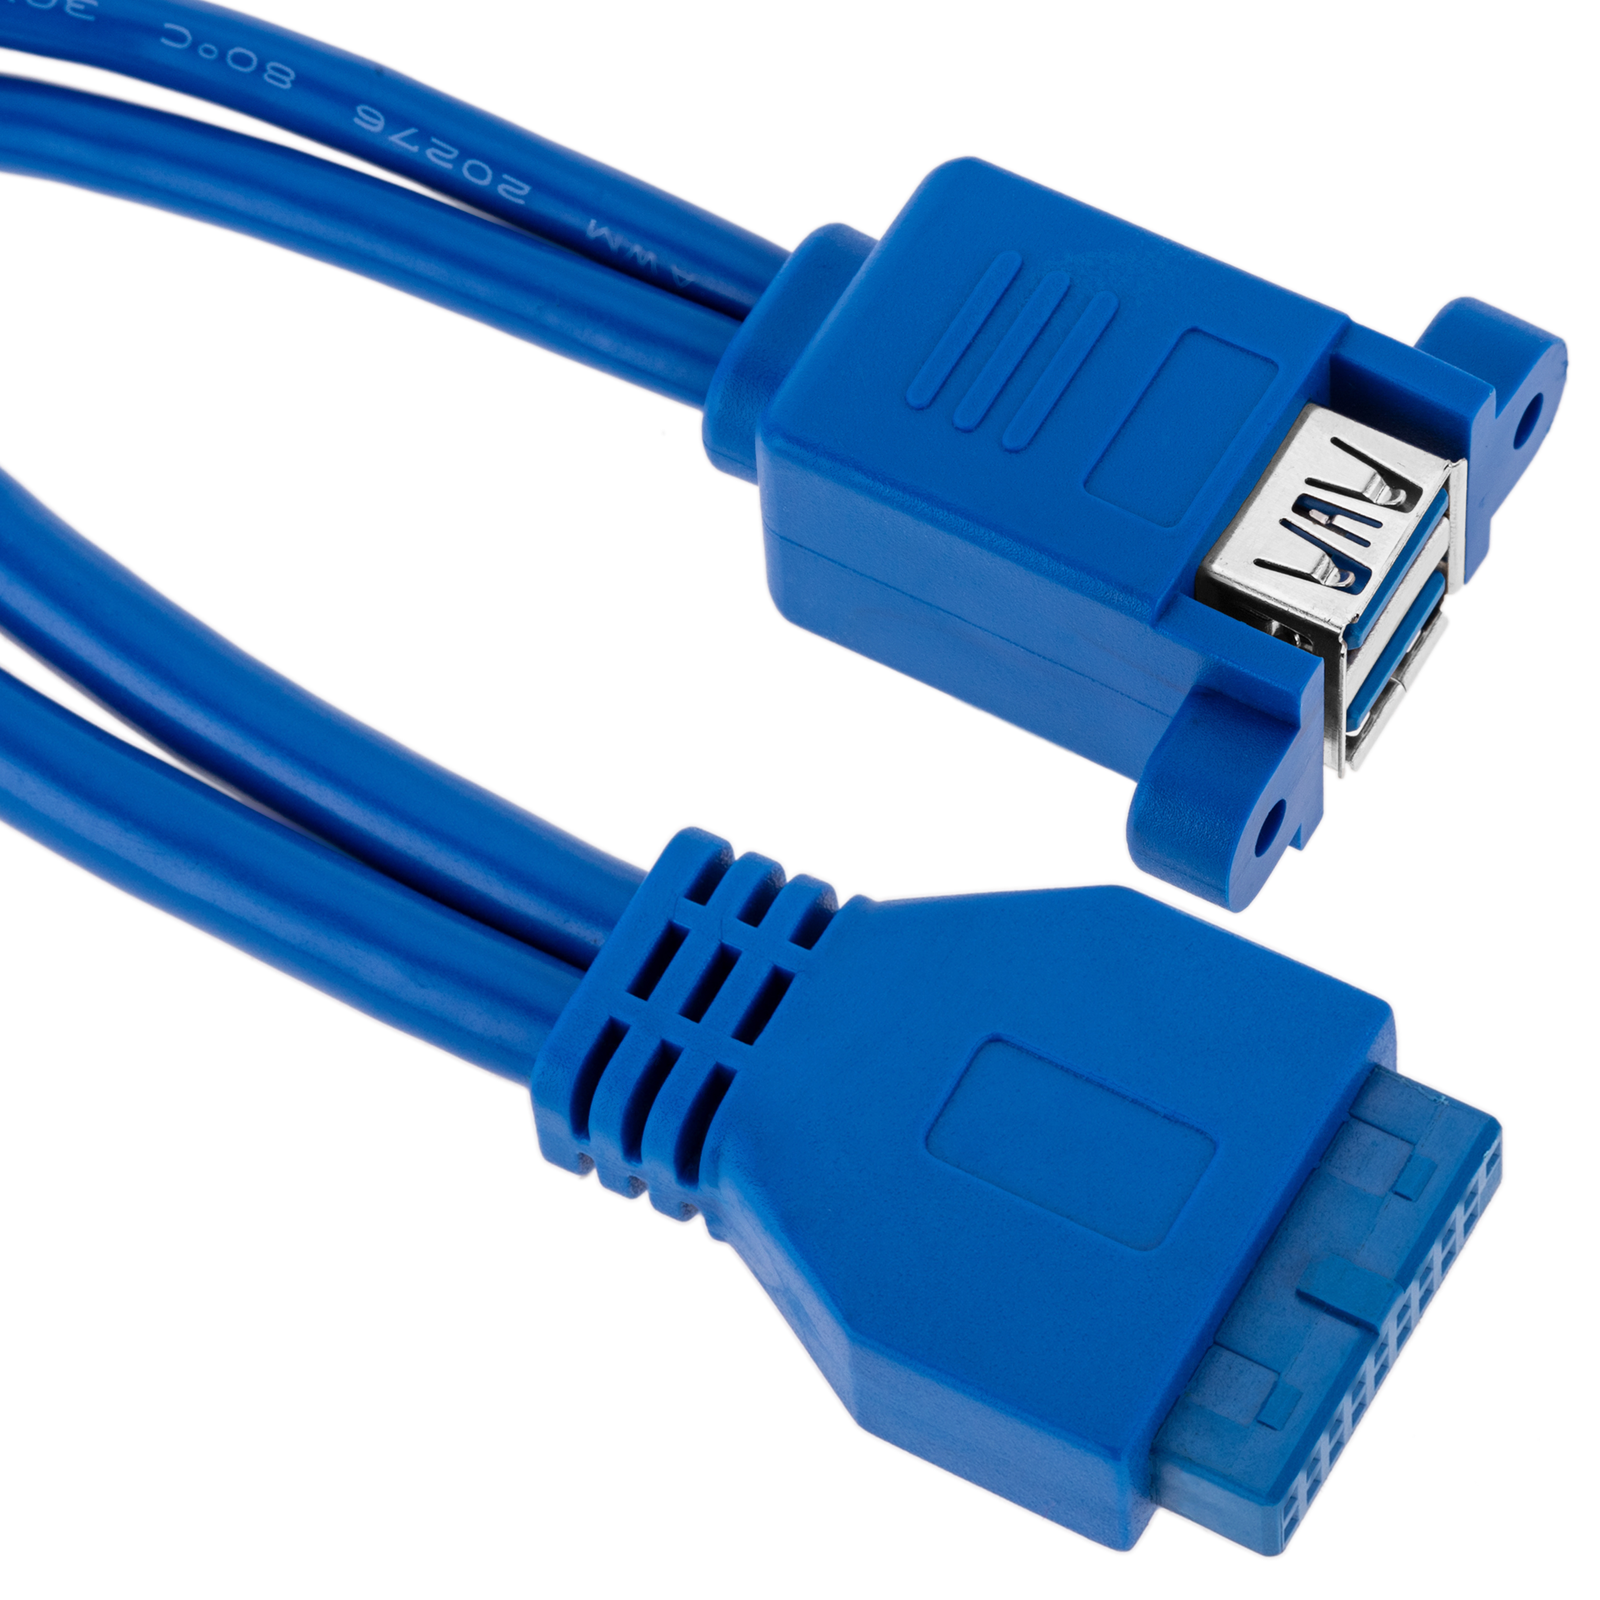 Placa Tapa HDMI 4k + 2 USB 3.0 + doble contacto eléctrico en ABS